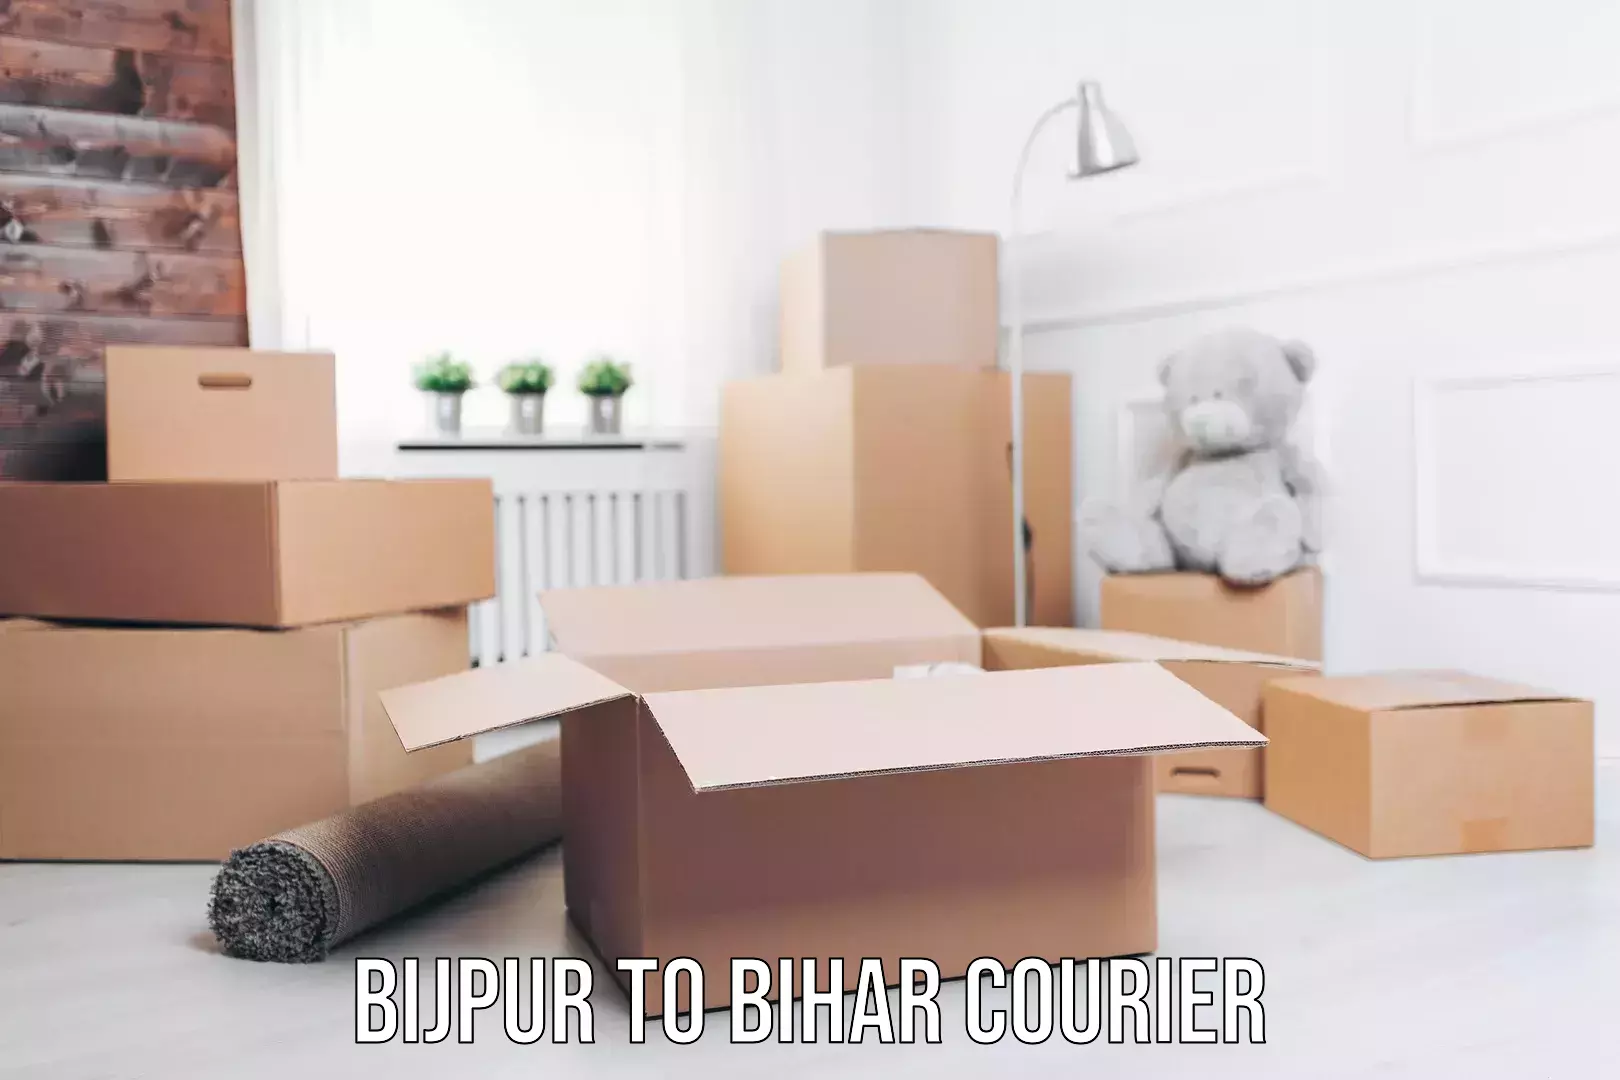 International courier networks Bijpur to Bihar